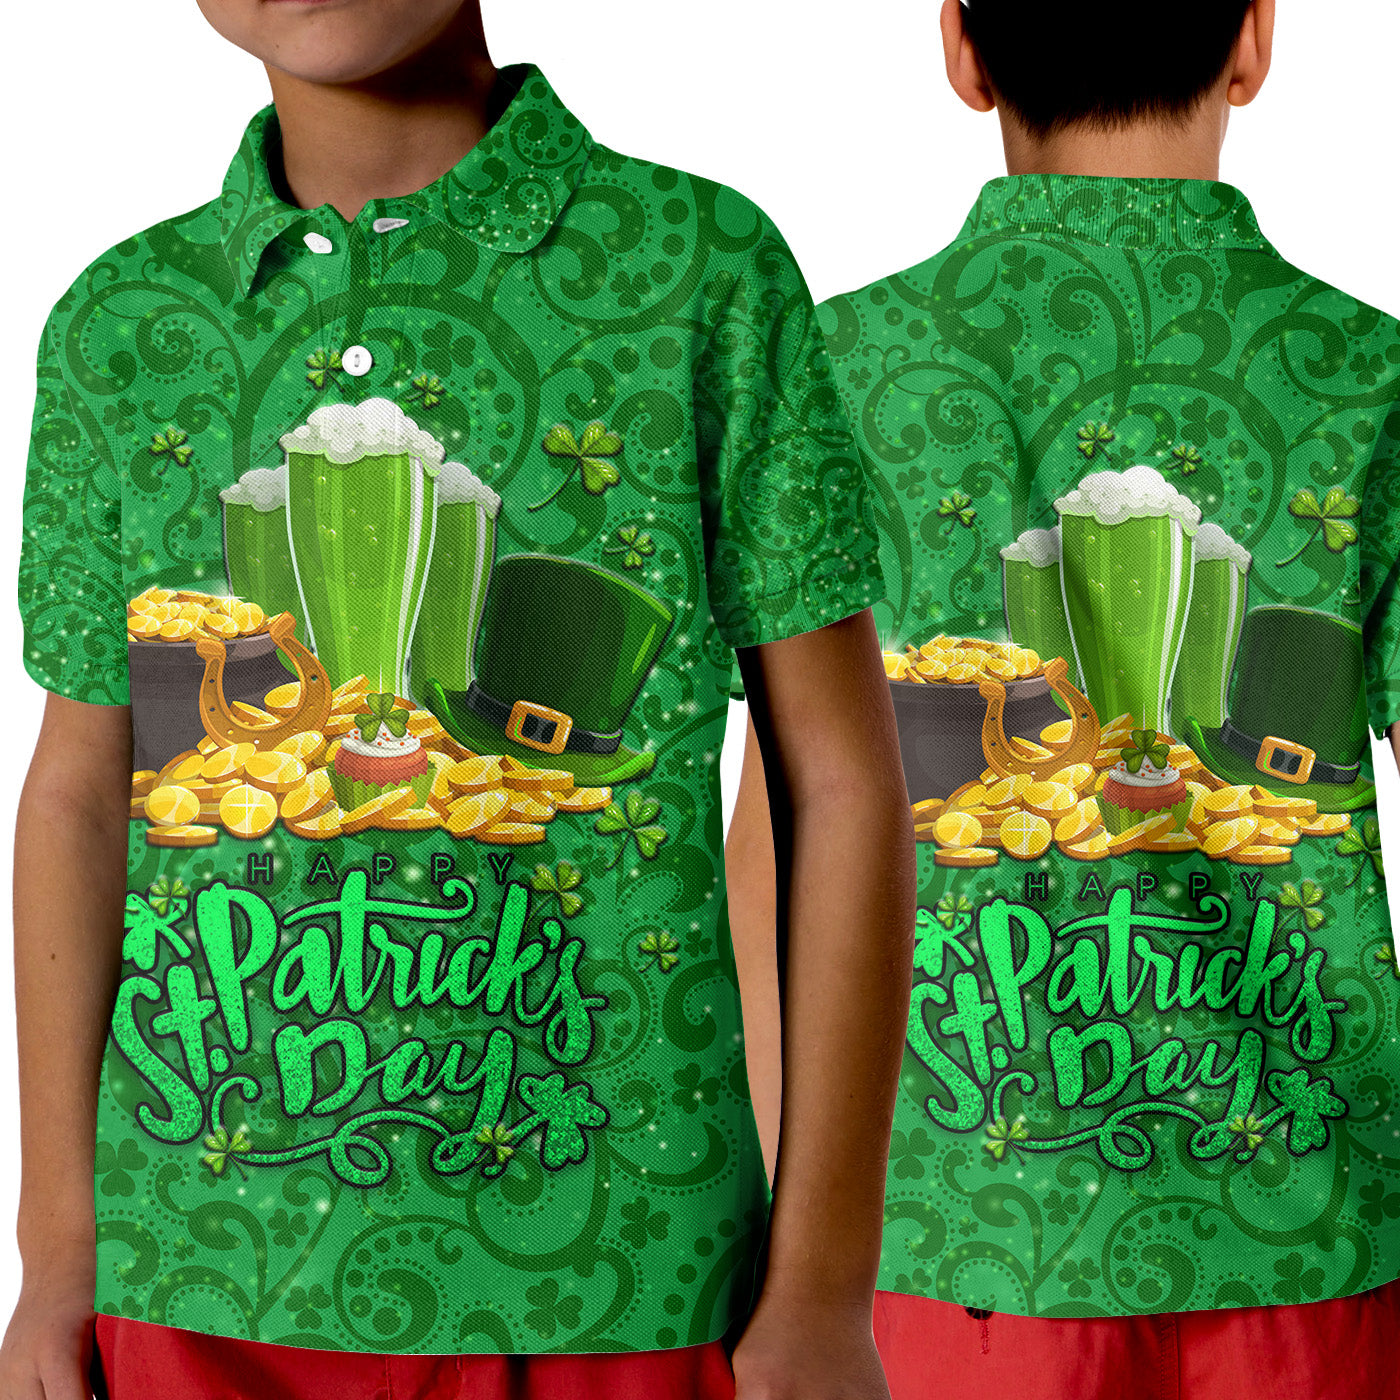 ireland-happy-saint-patricks-day-polo-shirt-kid-with-shamrock